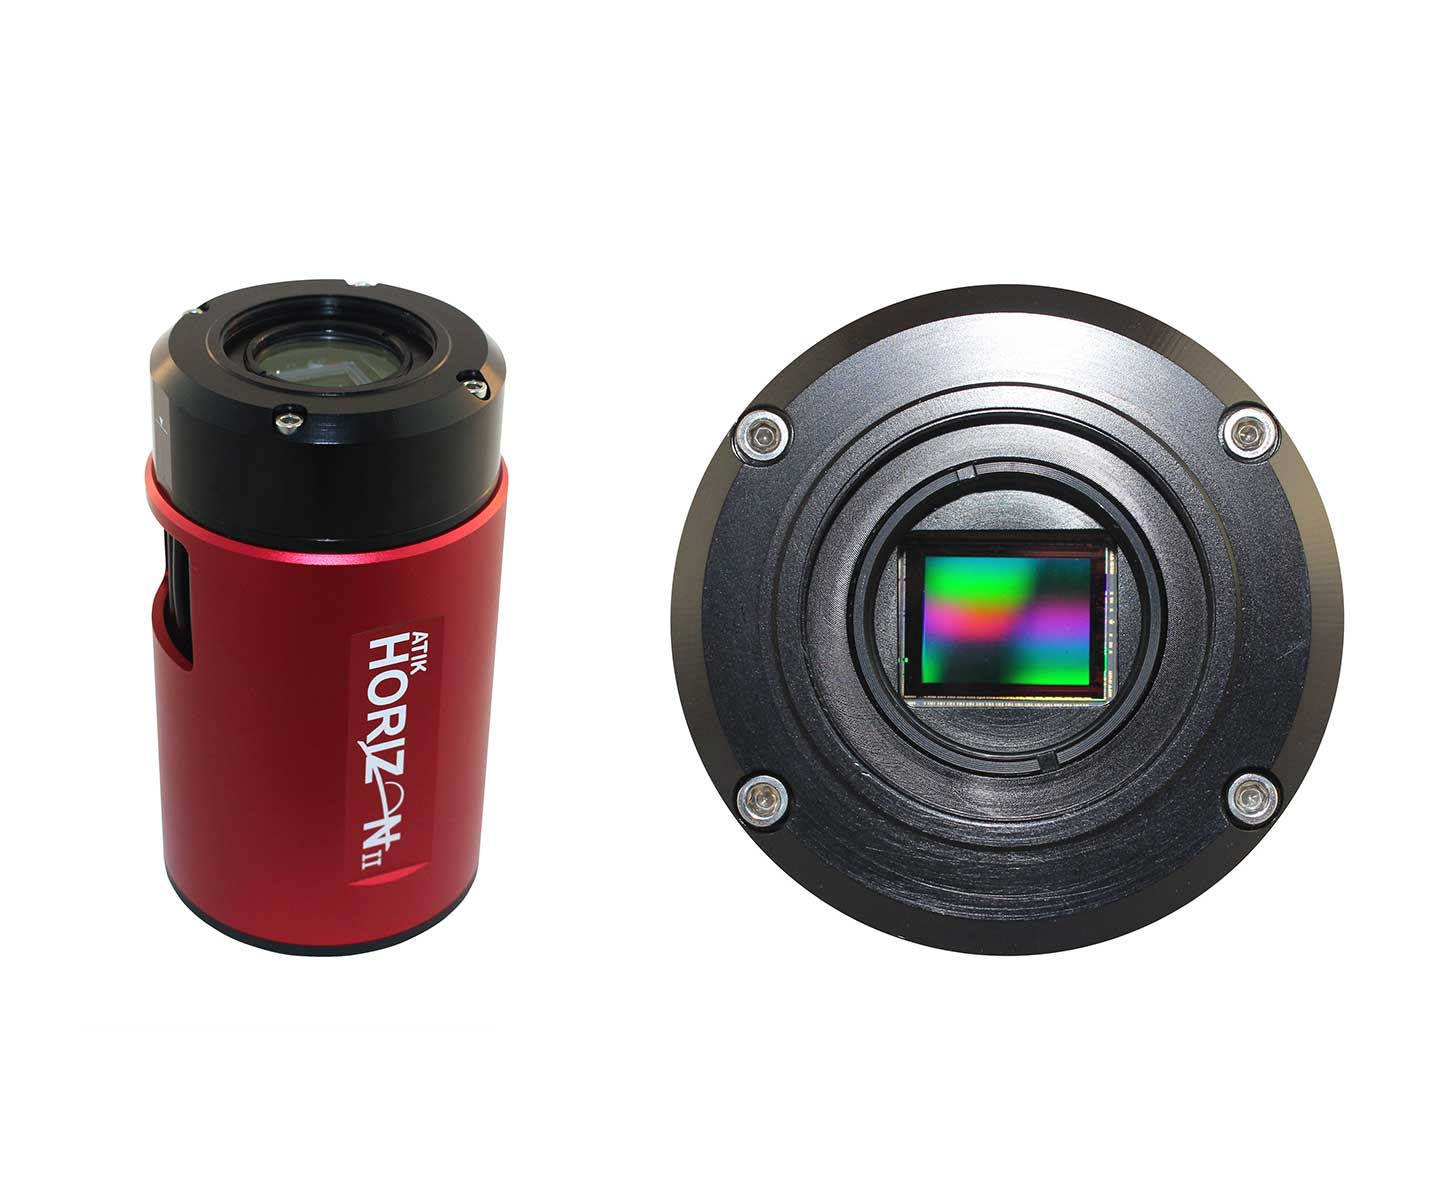    ATIK Horizon II monochrome CMOS Camera cooled, Sensor D 21.9 mm  [EN]  